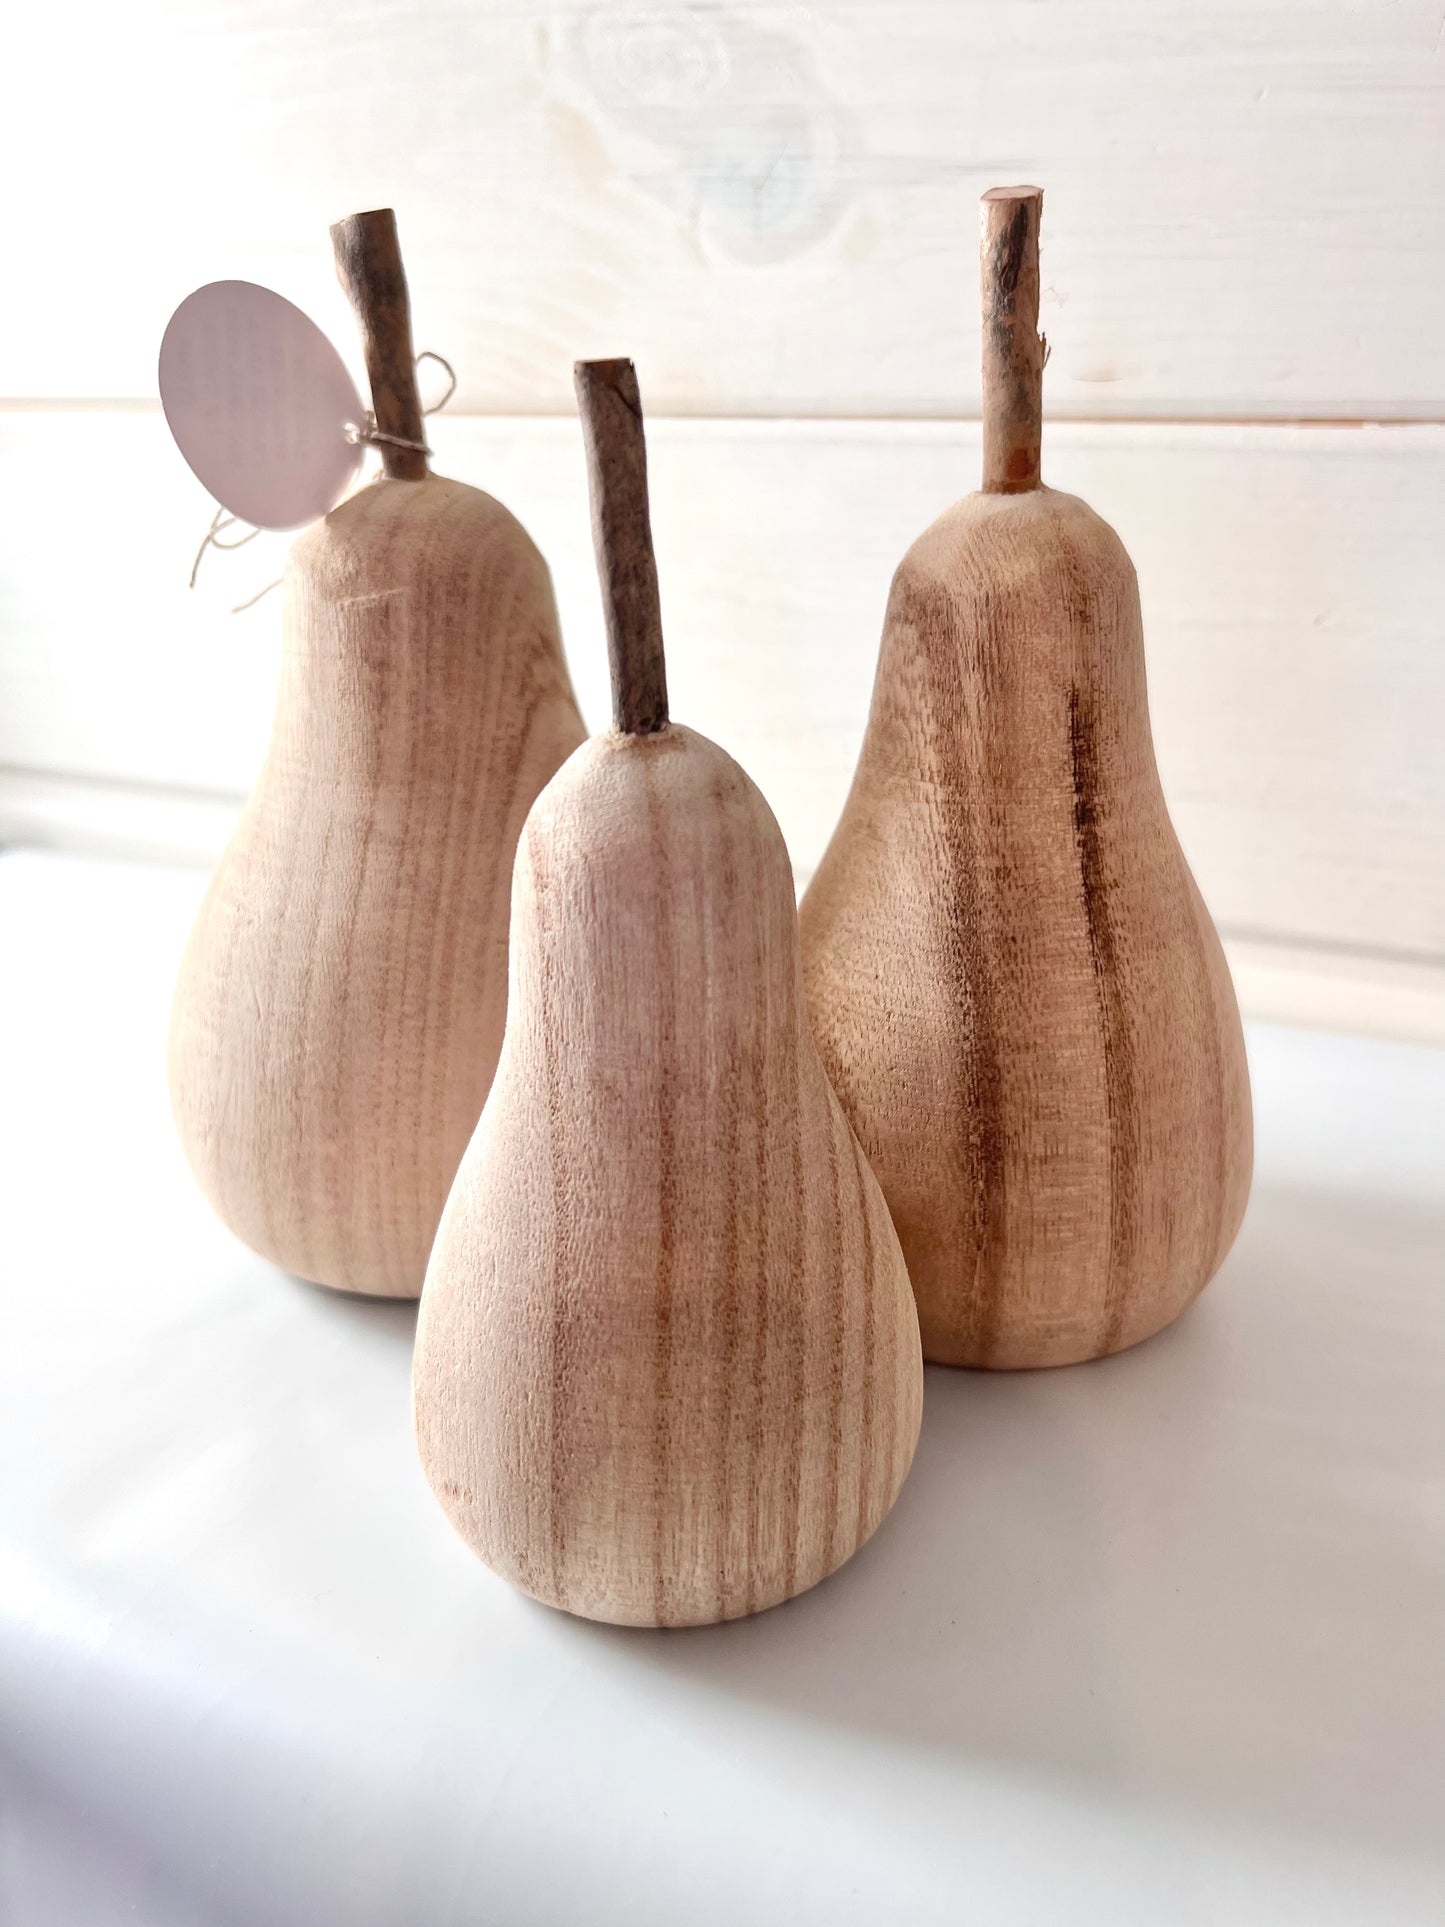 LG Wood Pear